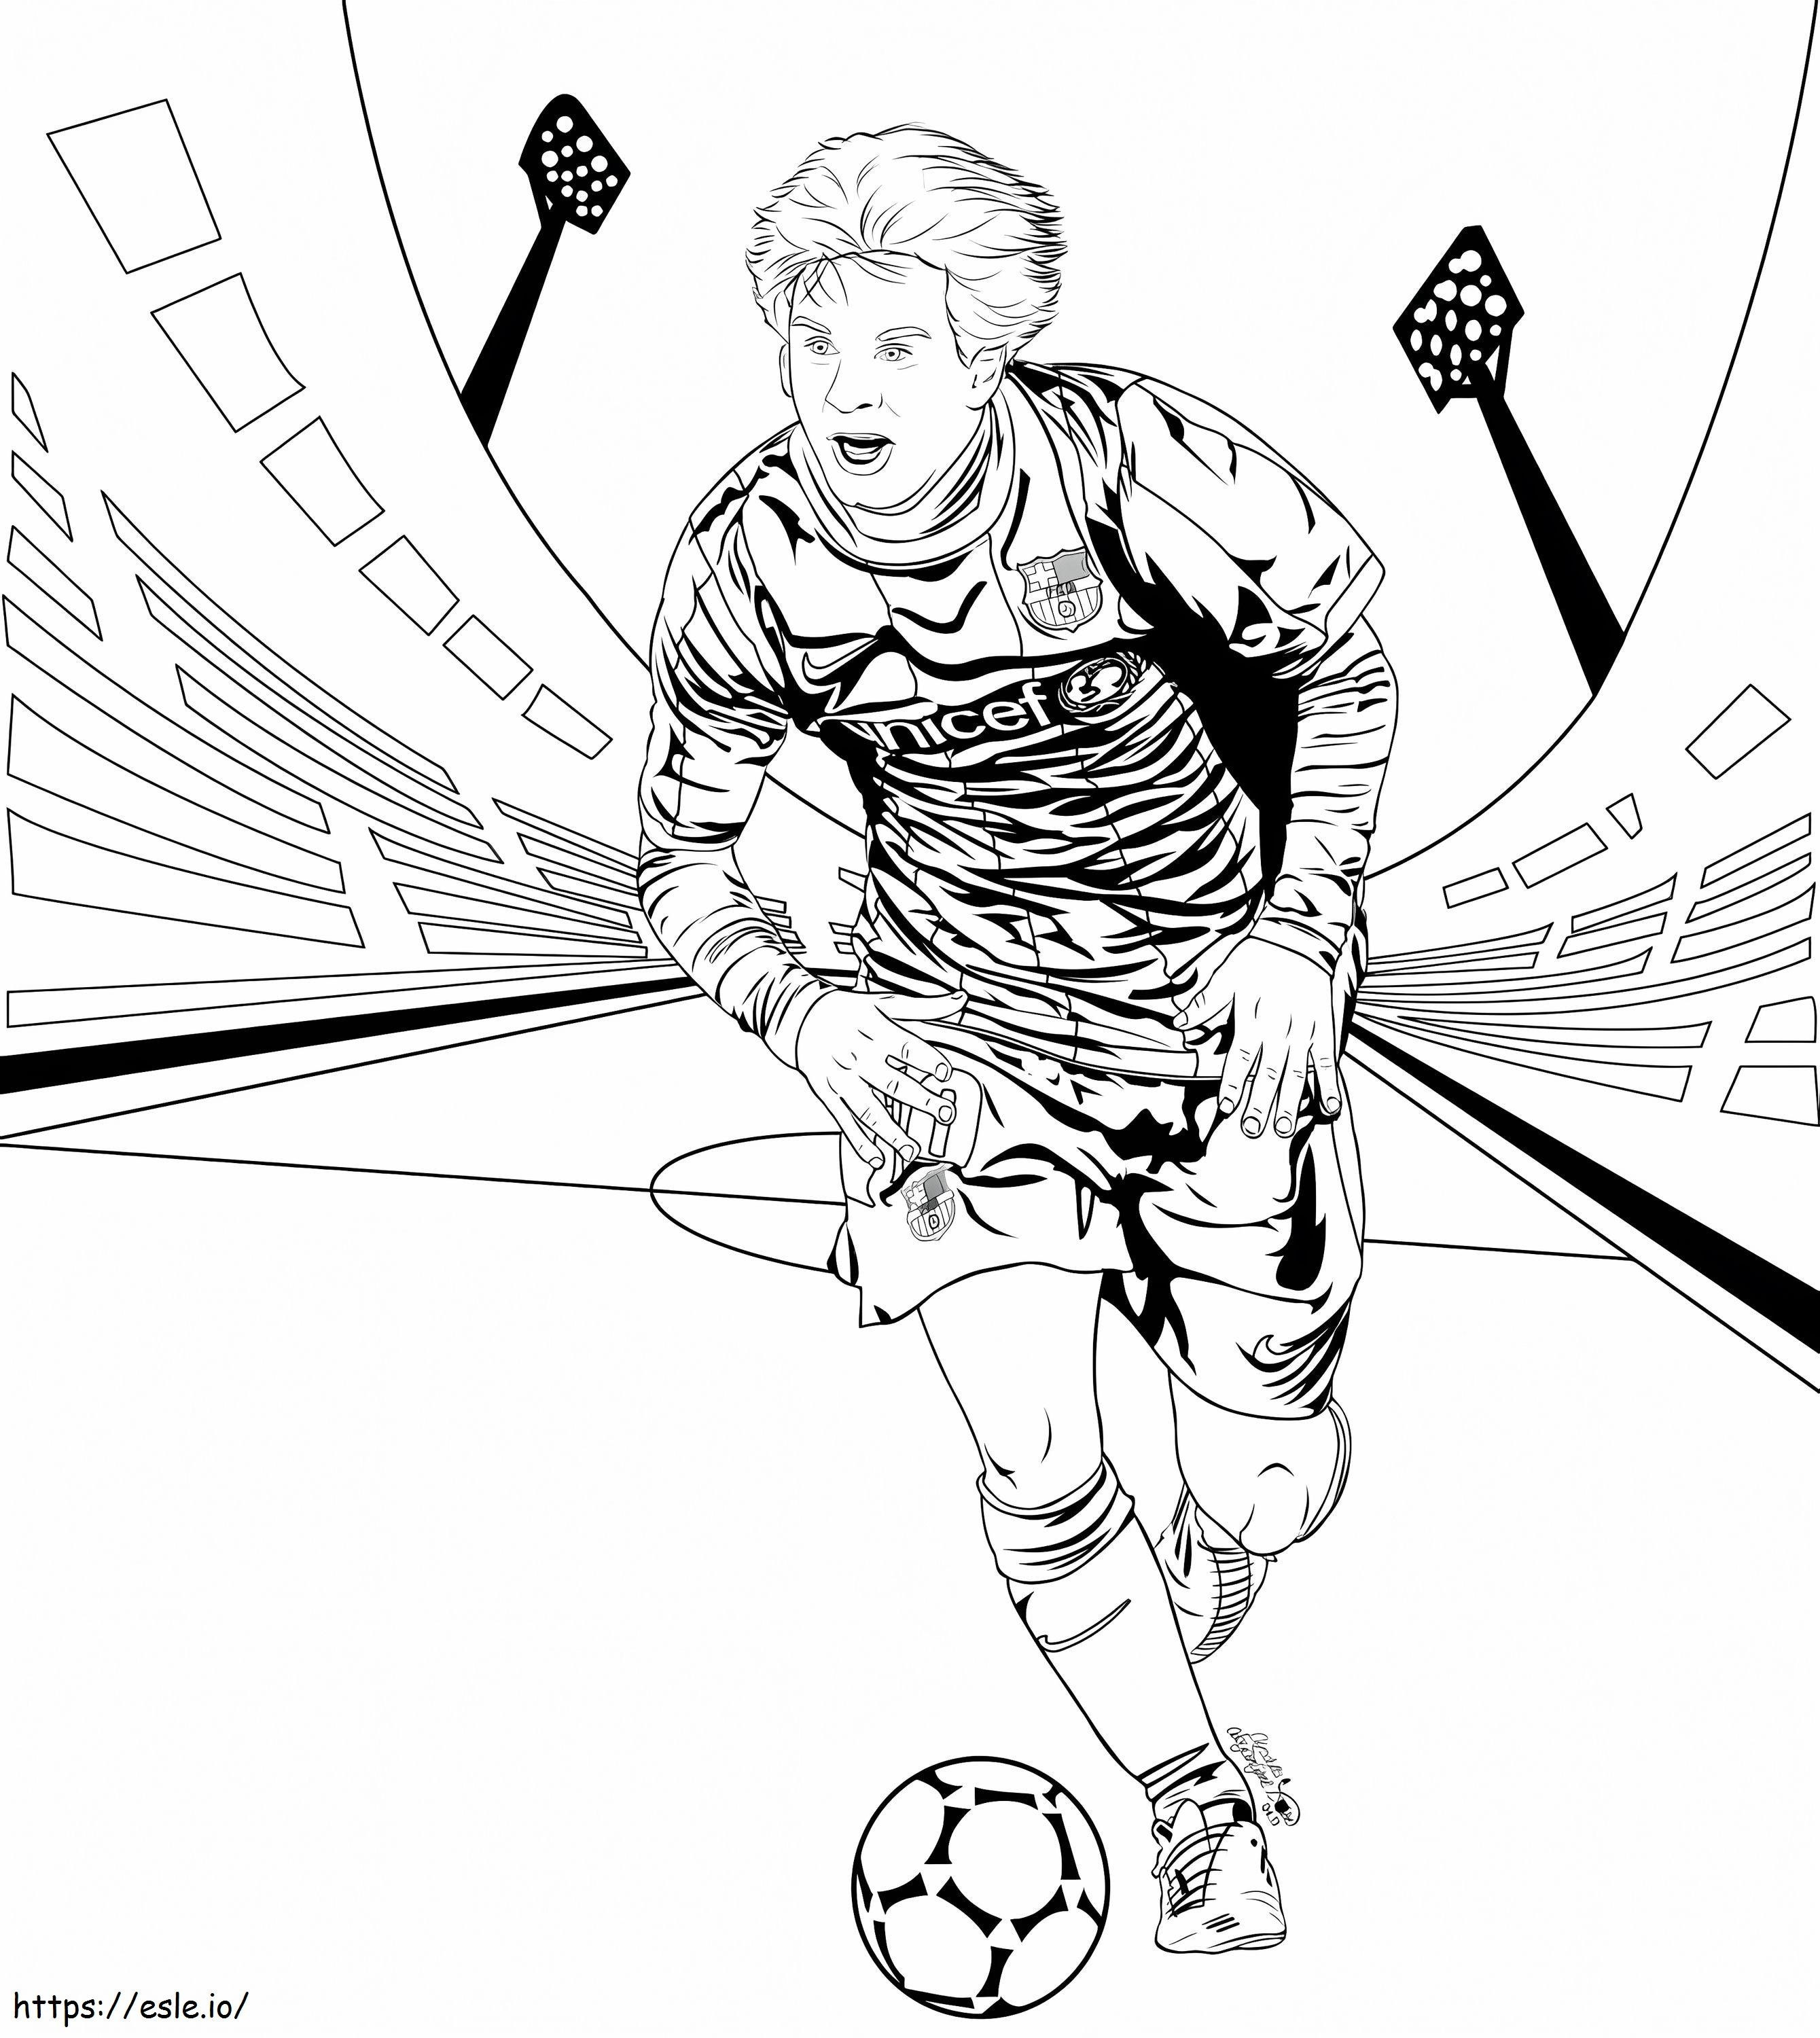 Lionel Messi jugando al fútbol para colorear